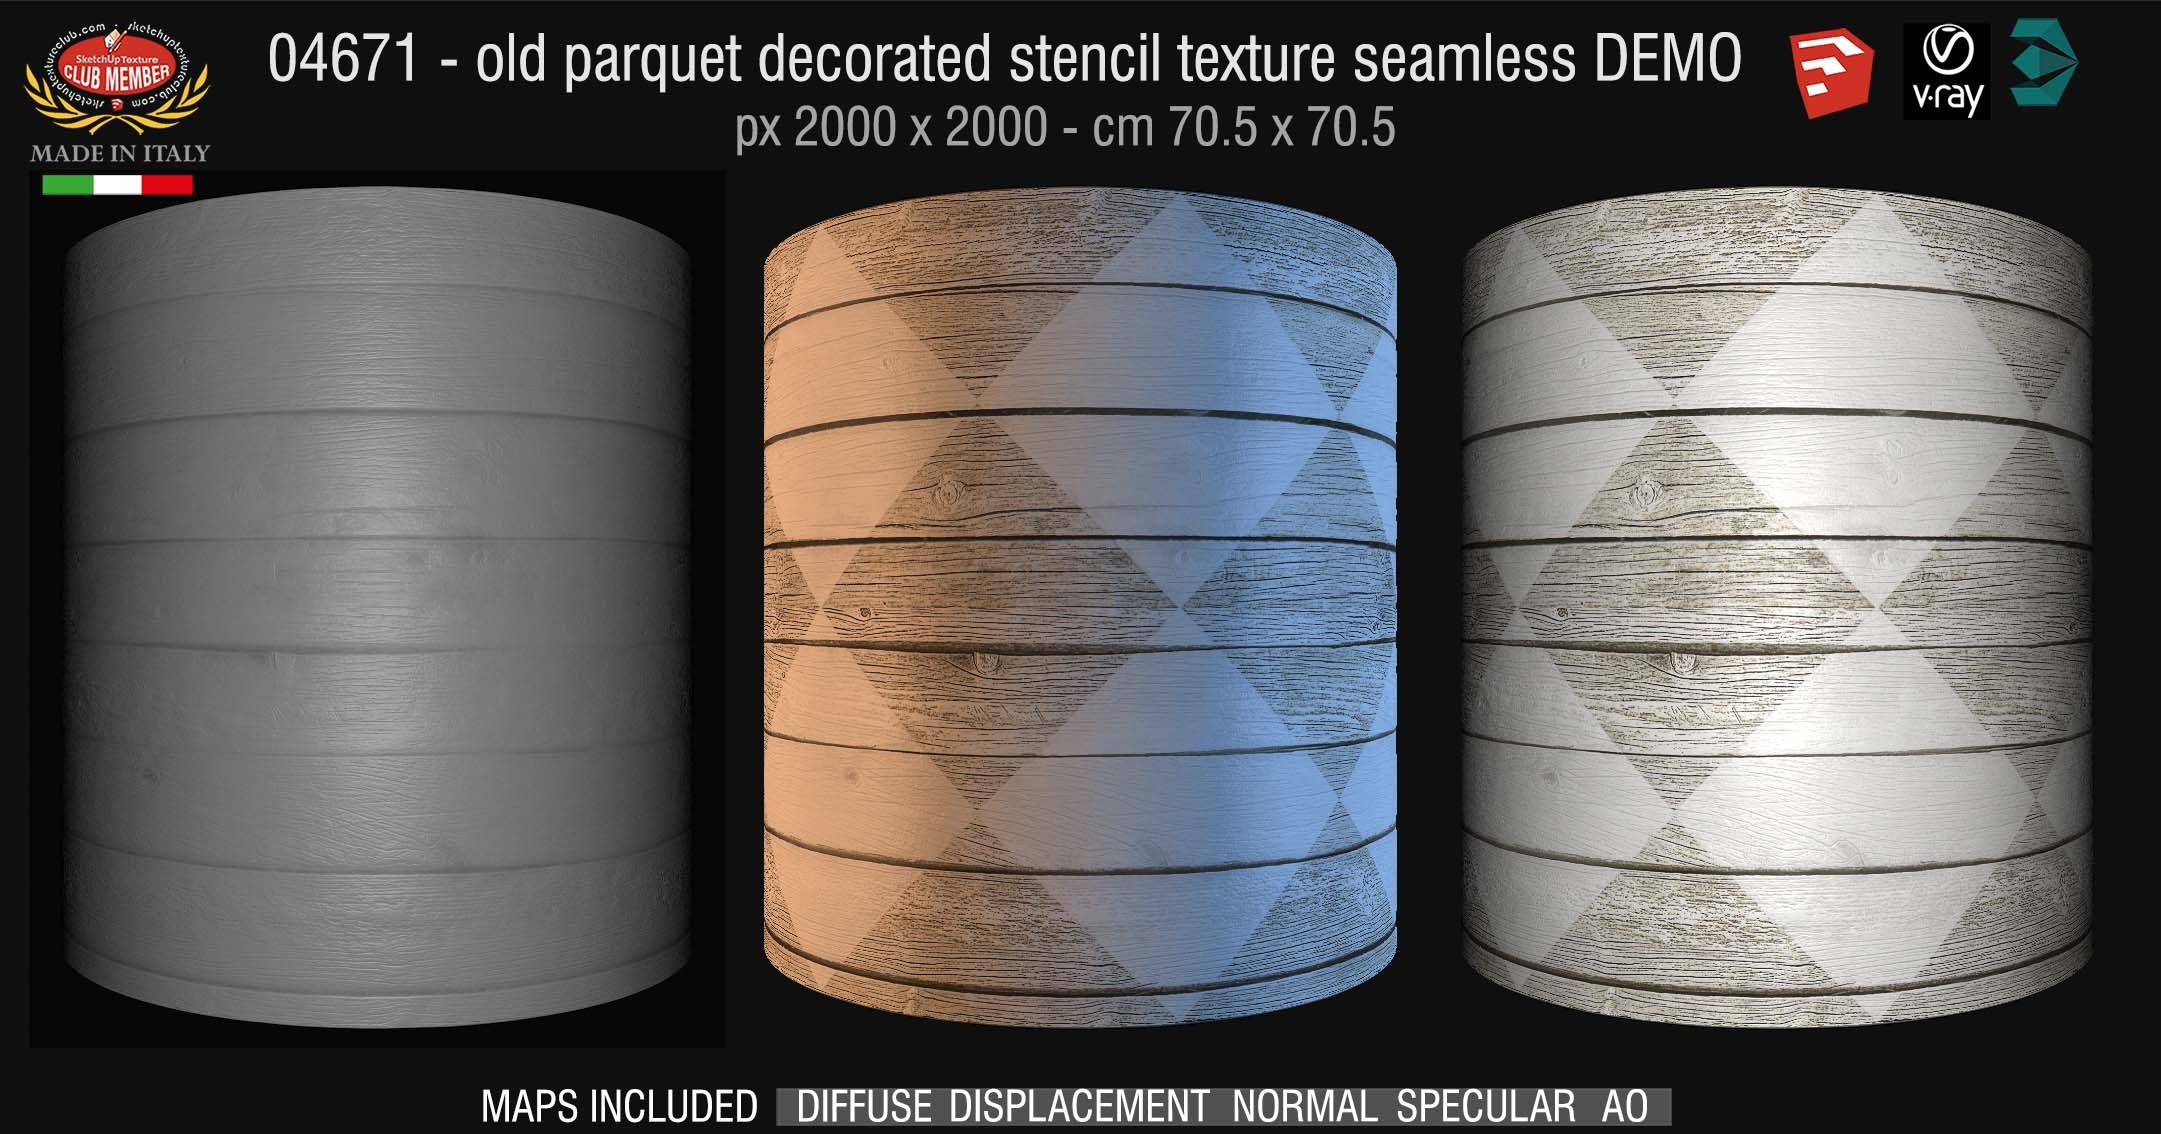 04761 HR Parquet decorated stencil texture seamless + maps DEMO